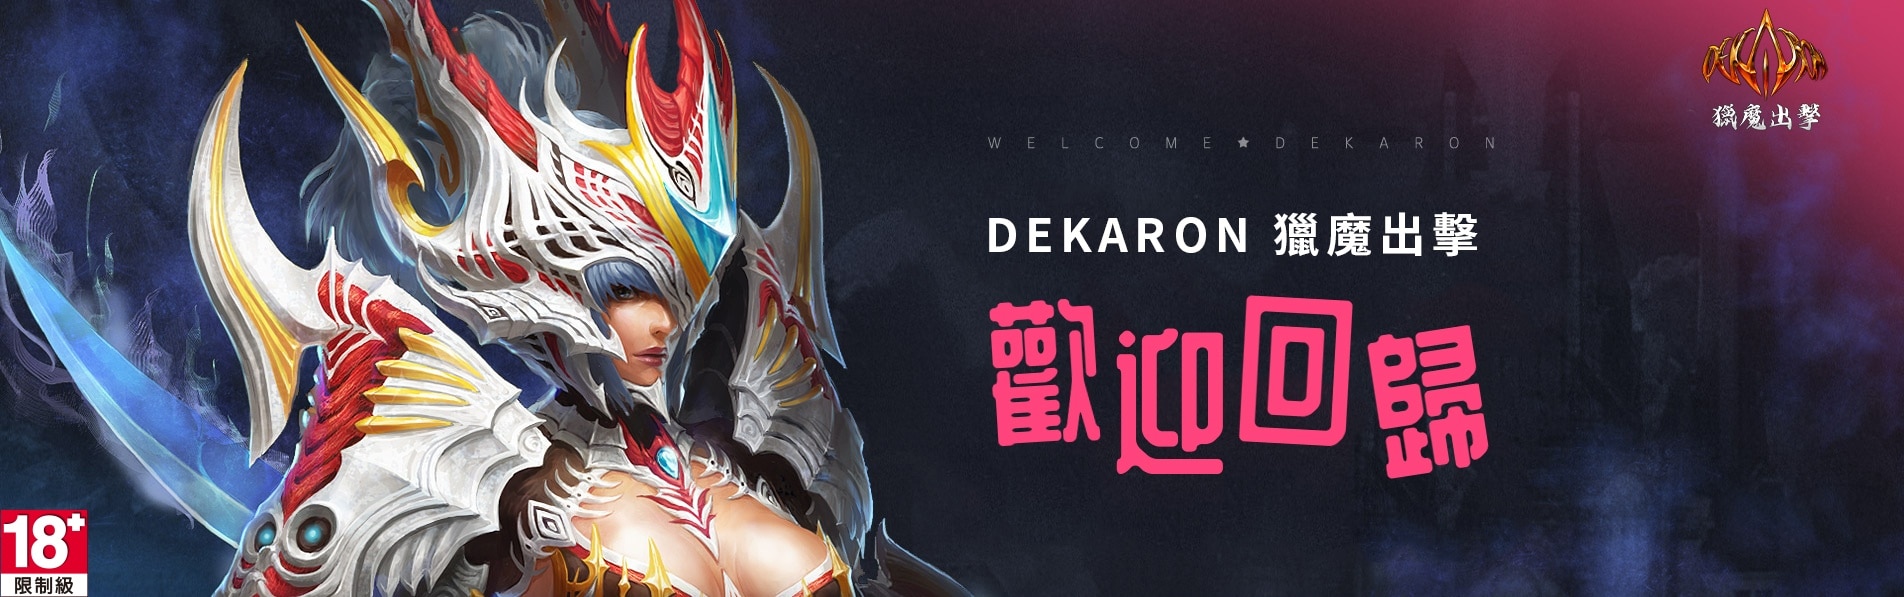 歡迎回歸《Dekaron獵魔出擊》